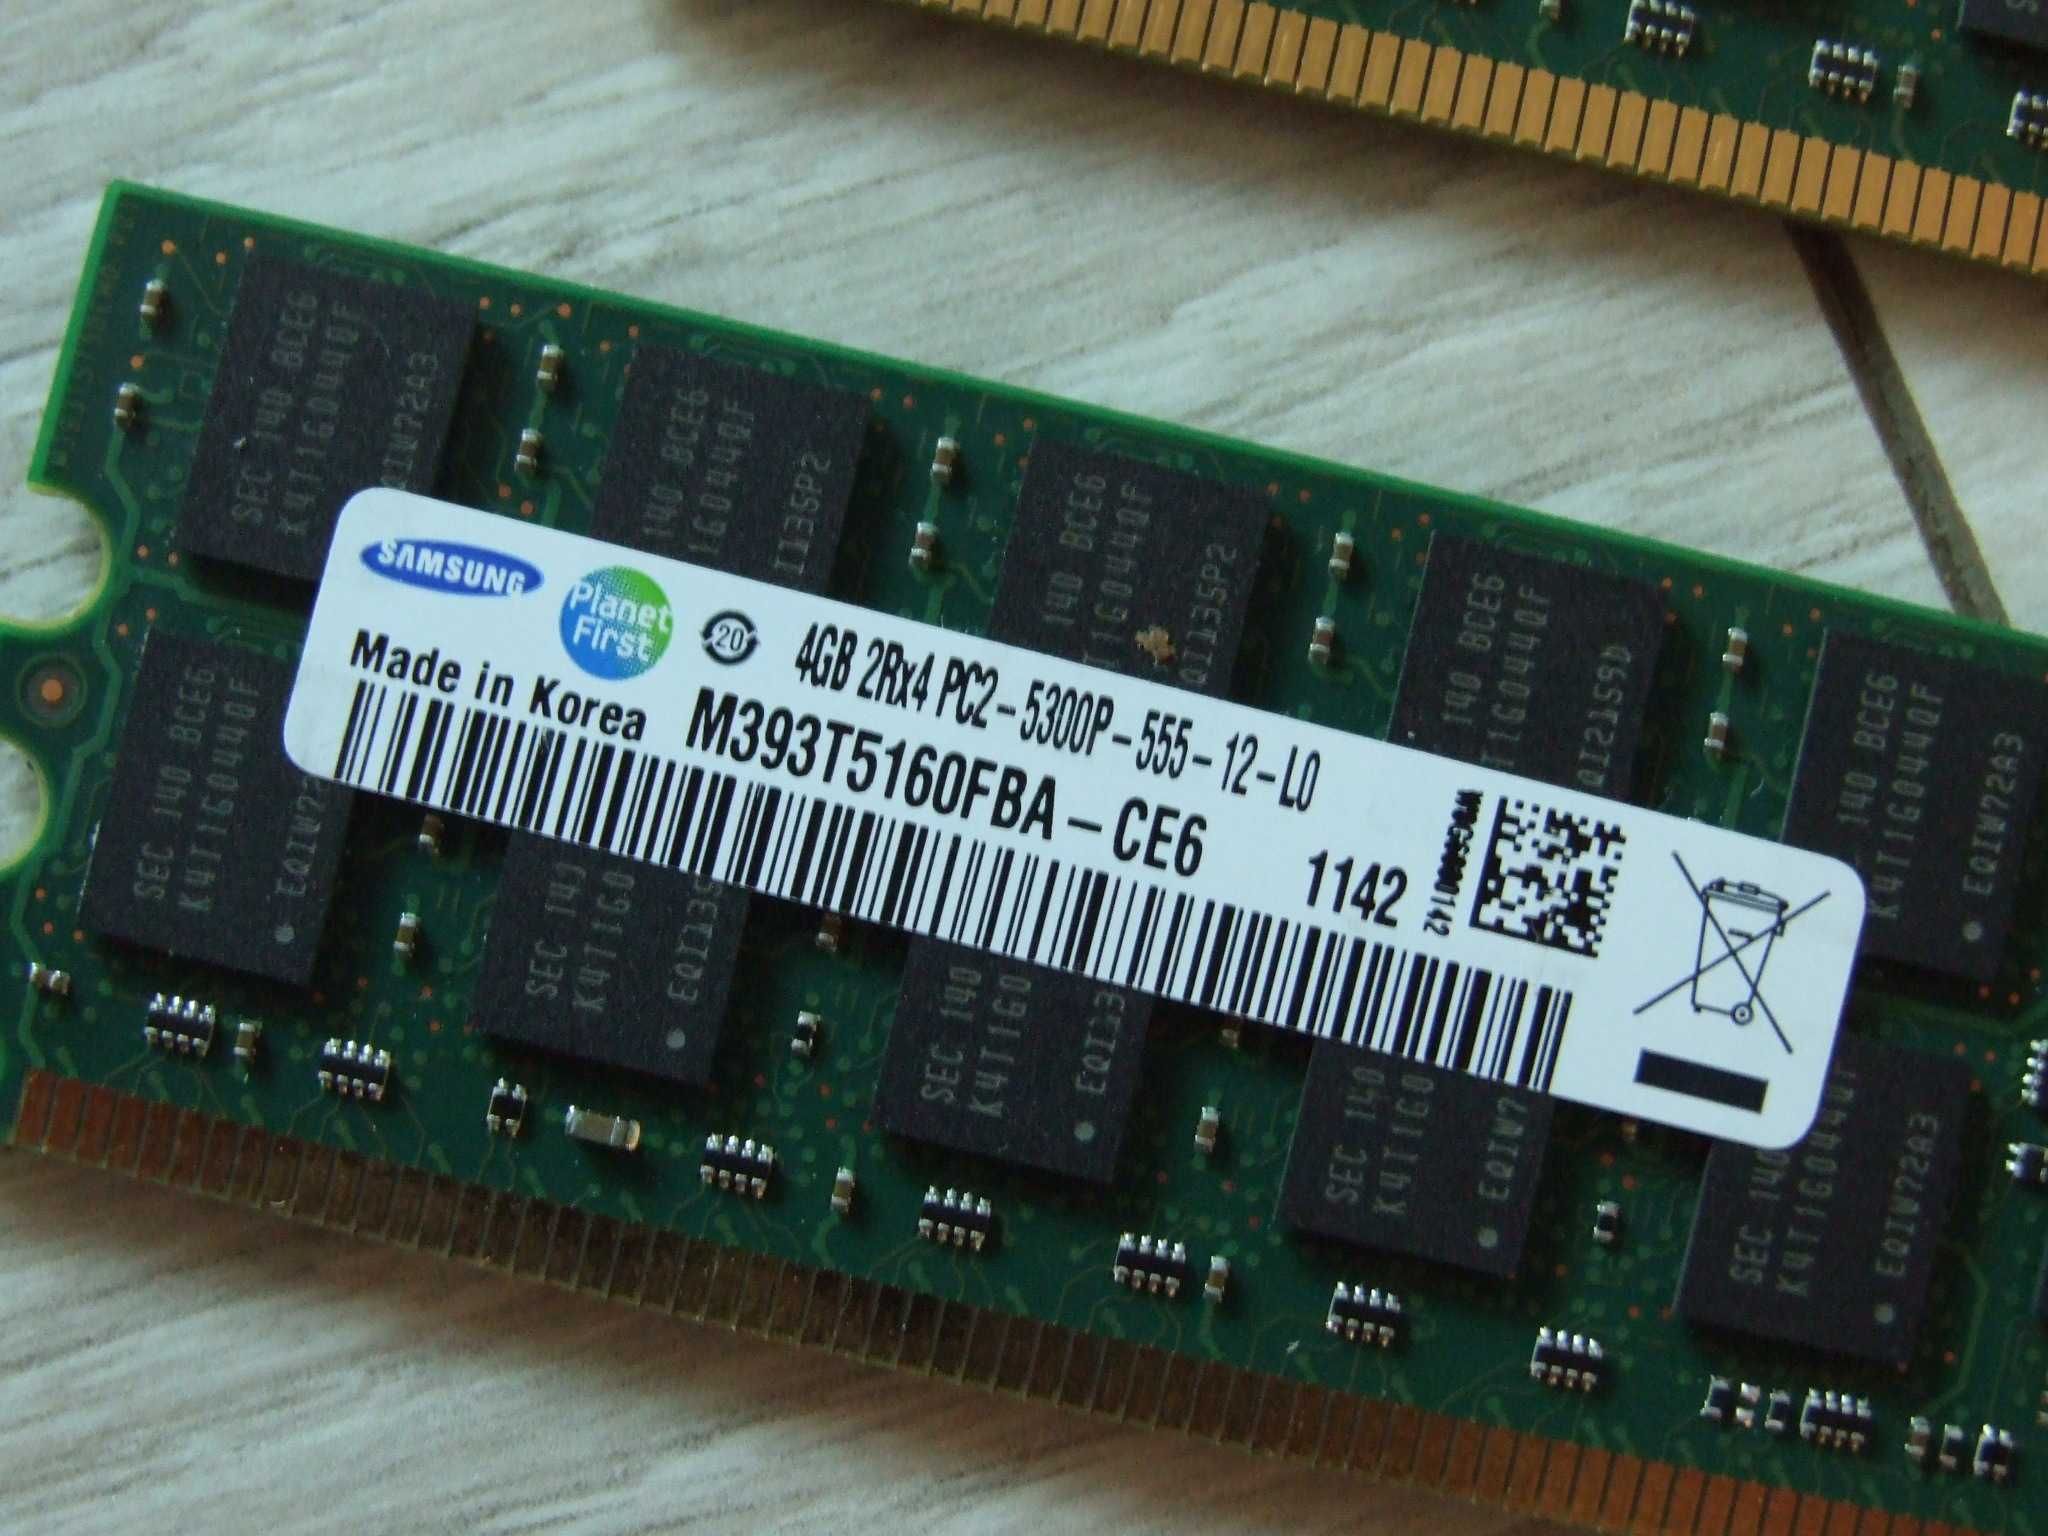 Pamięć Samsung 2x 4GB 2Rx4 PC2-5300P-555-12-L0